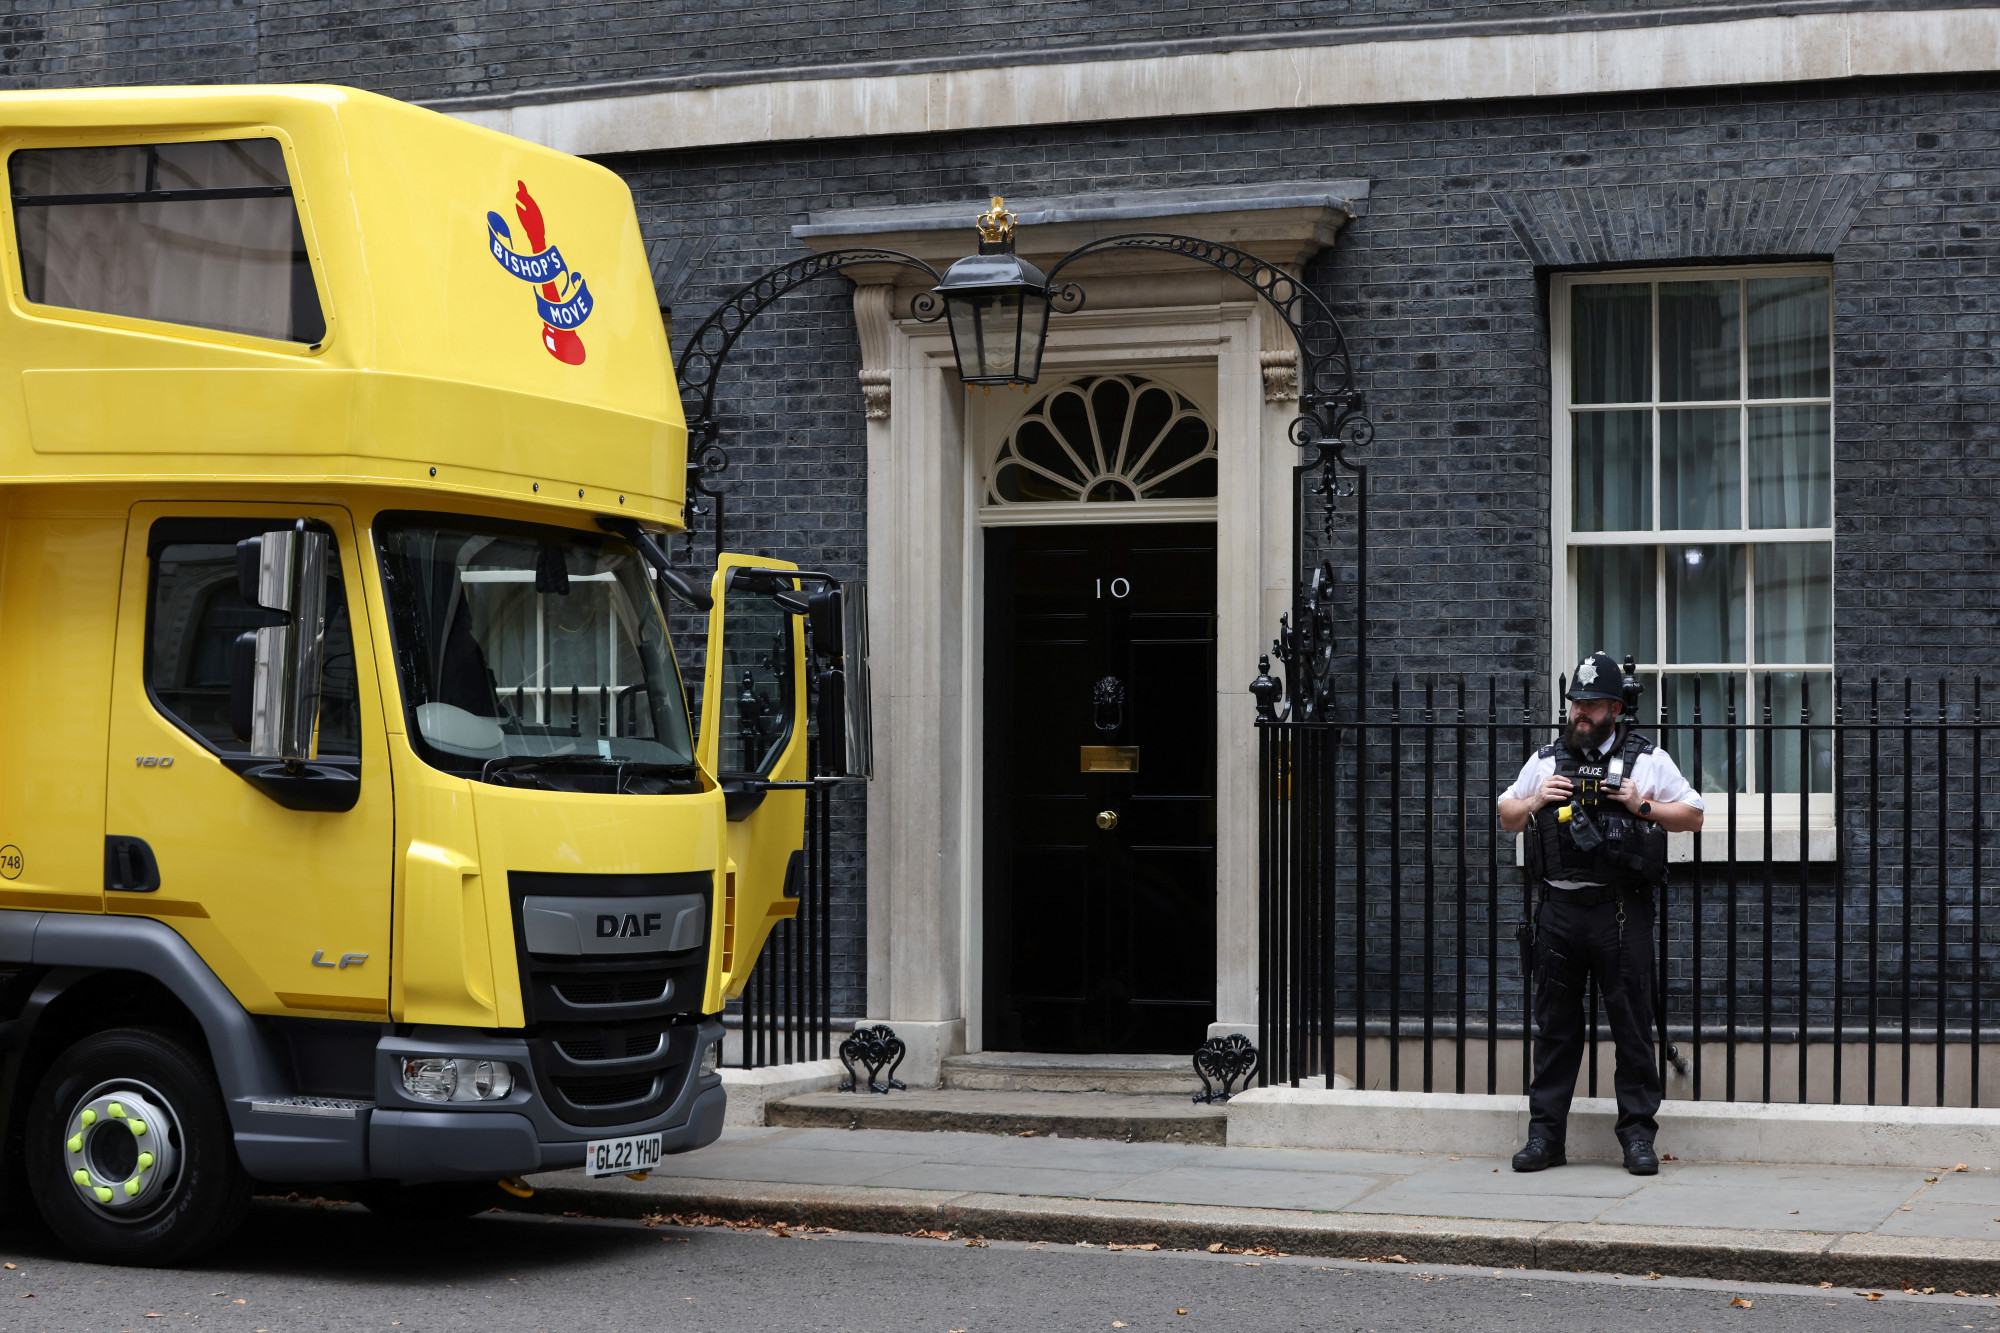 Miközben Boris Johnson nyaral, megjelentek a költöztetők a Downing Streeten